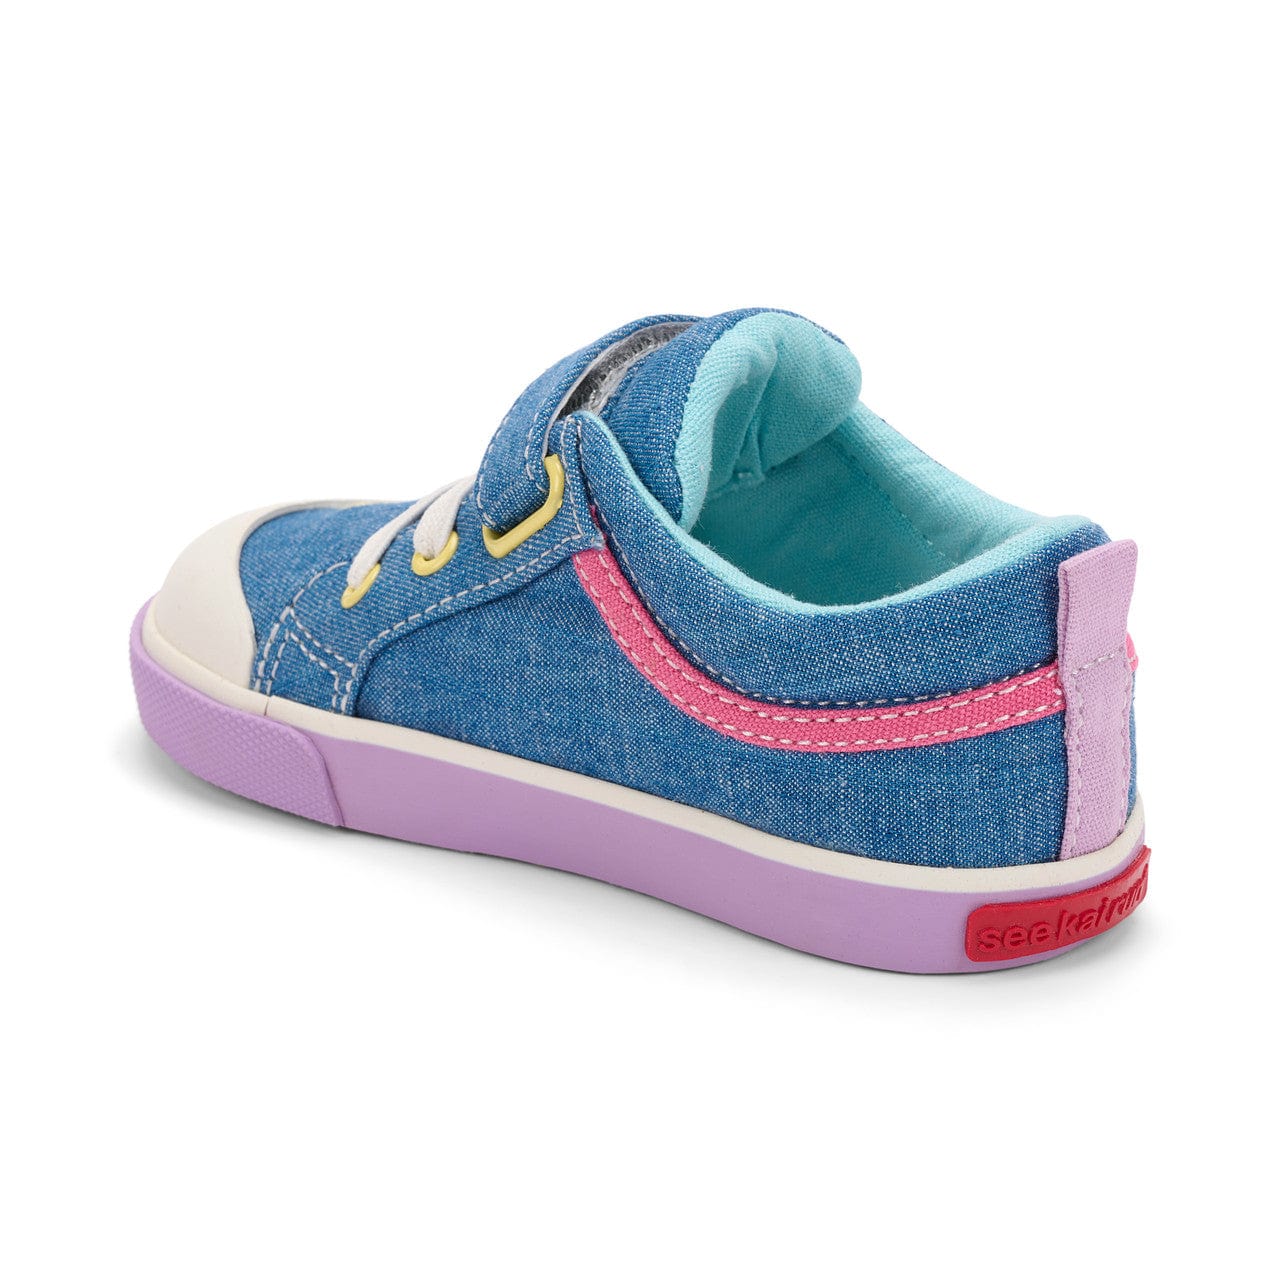 See Kai Run sneakers Size 5 See Kai Run Kristin Sneaker - Chambray/Happy